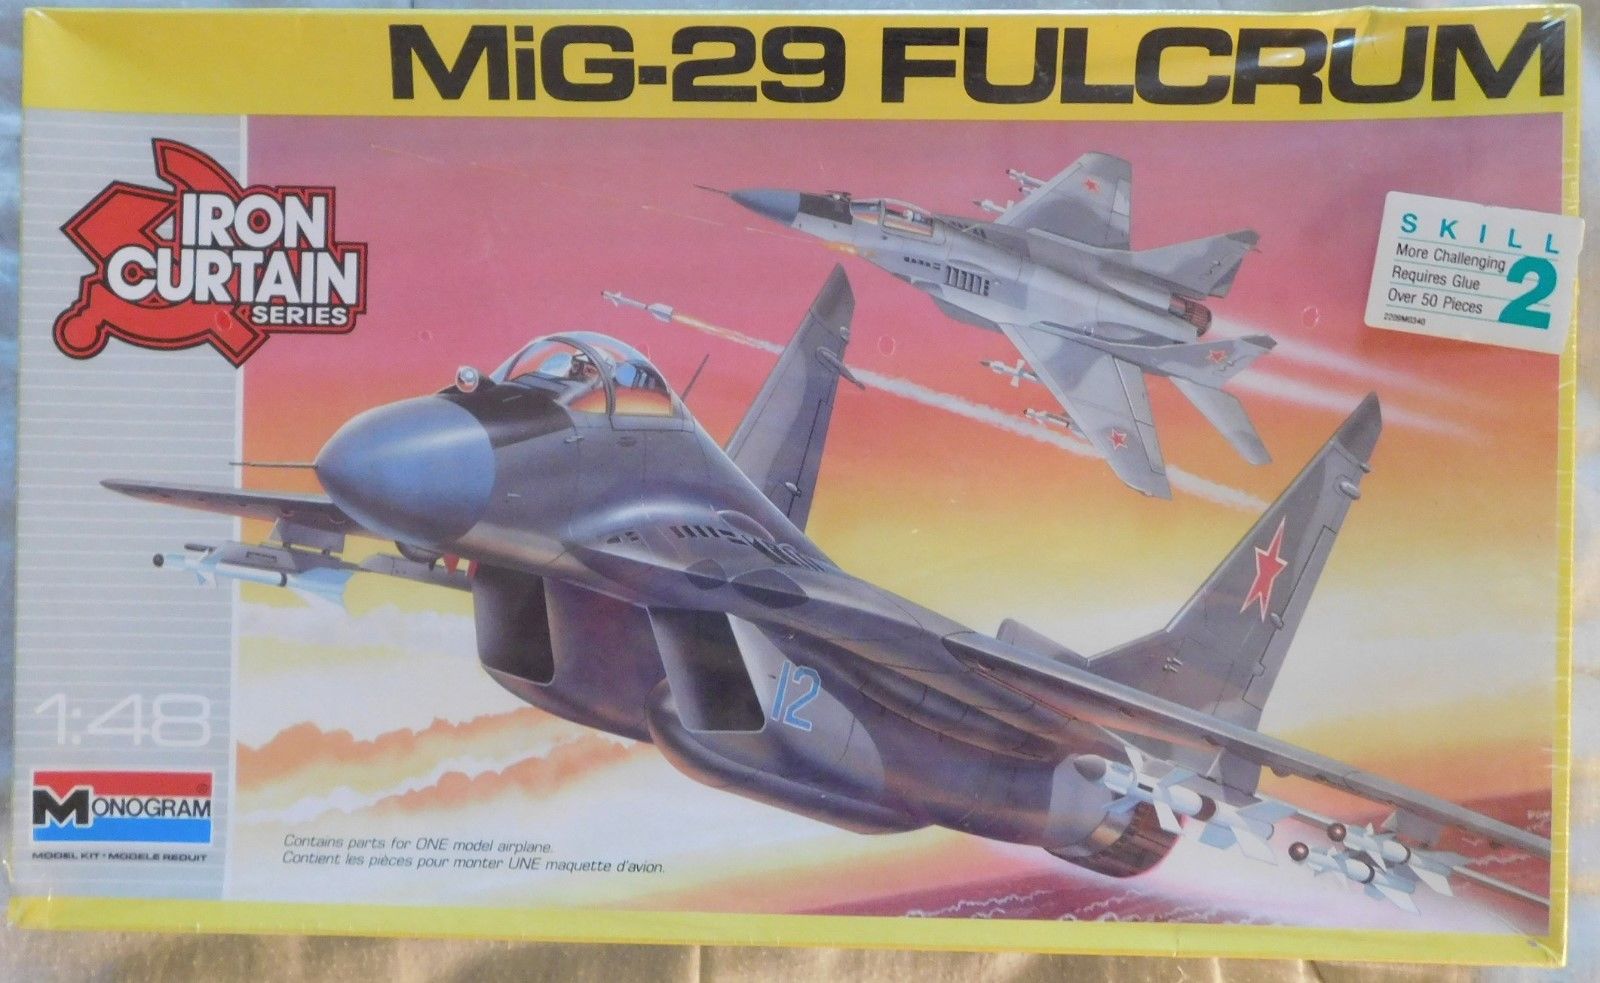 MiG-29 Fulcrum Iron Curtain series 